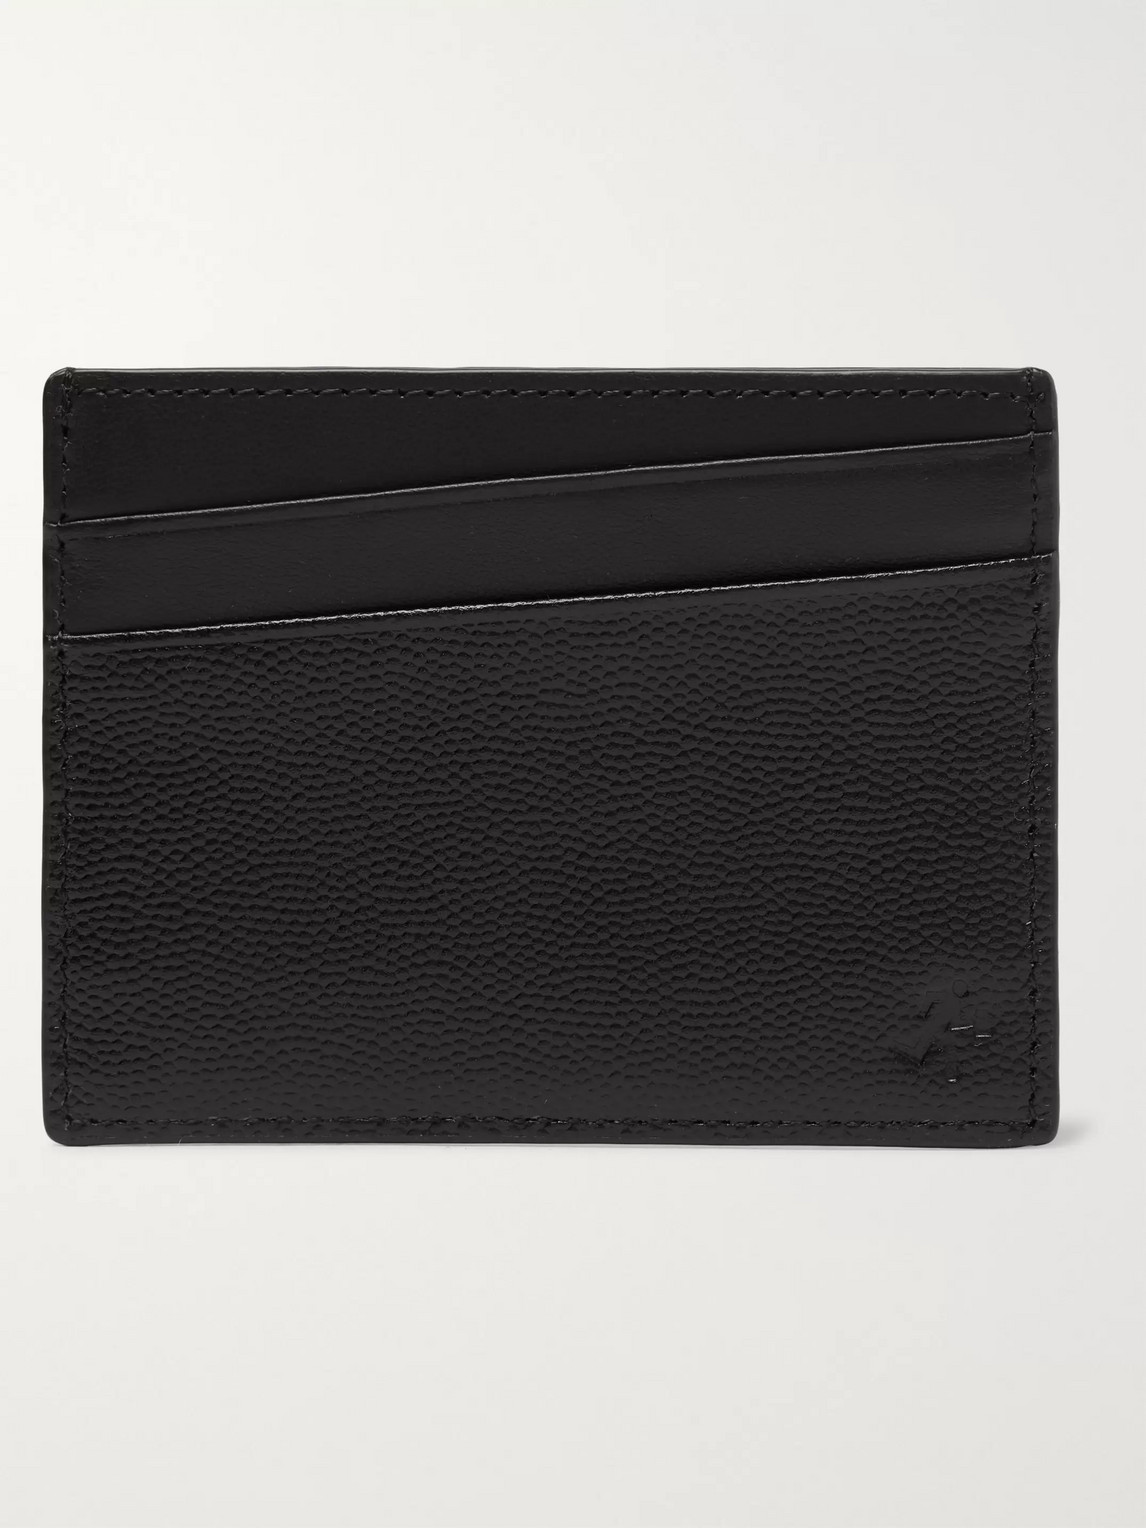 Want Les Essentiels De La Vie Branson Pebble-grain Leather Cardholder In Black